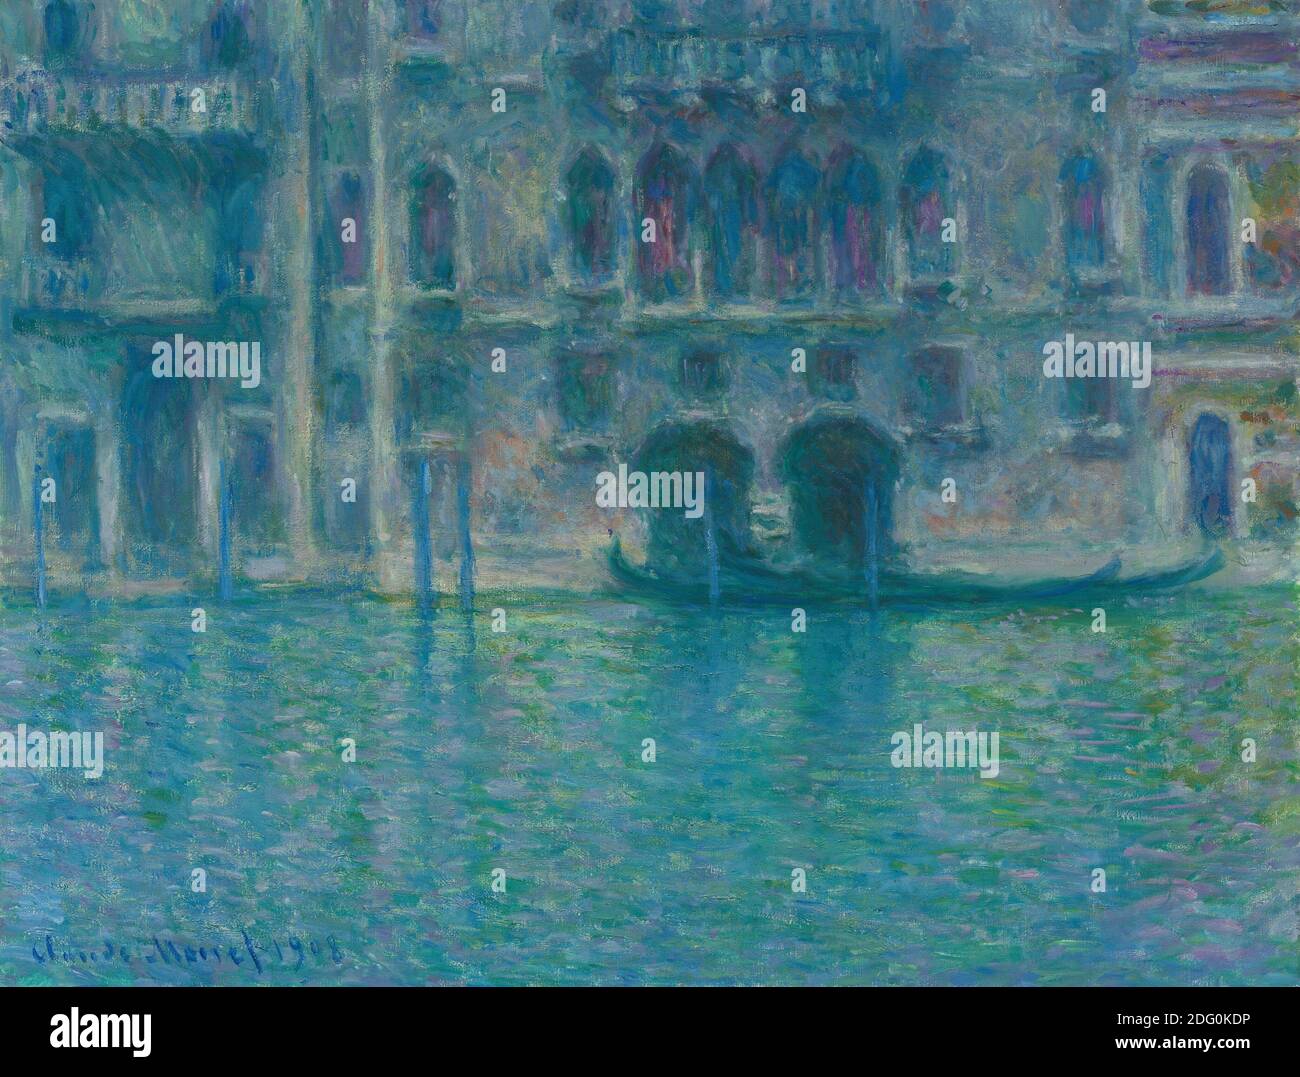 Titre: Palazzo da Mula, Venise Créateur: Claude Monet Date: 1908 Moyen: Huile sur toile dimension: 61.4 x 80.5 cm lieu: National Gallery of Art, Washington Banque D'Images